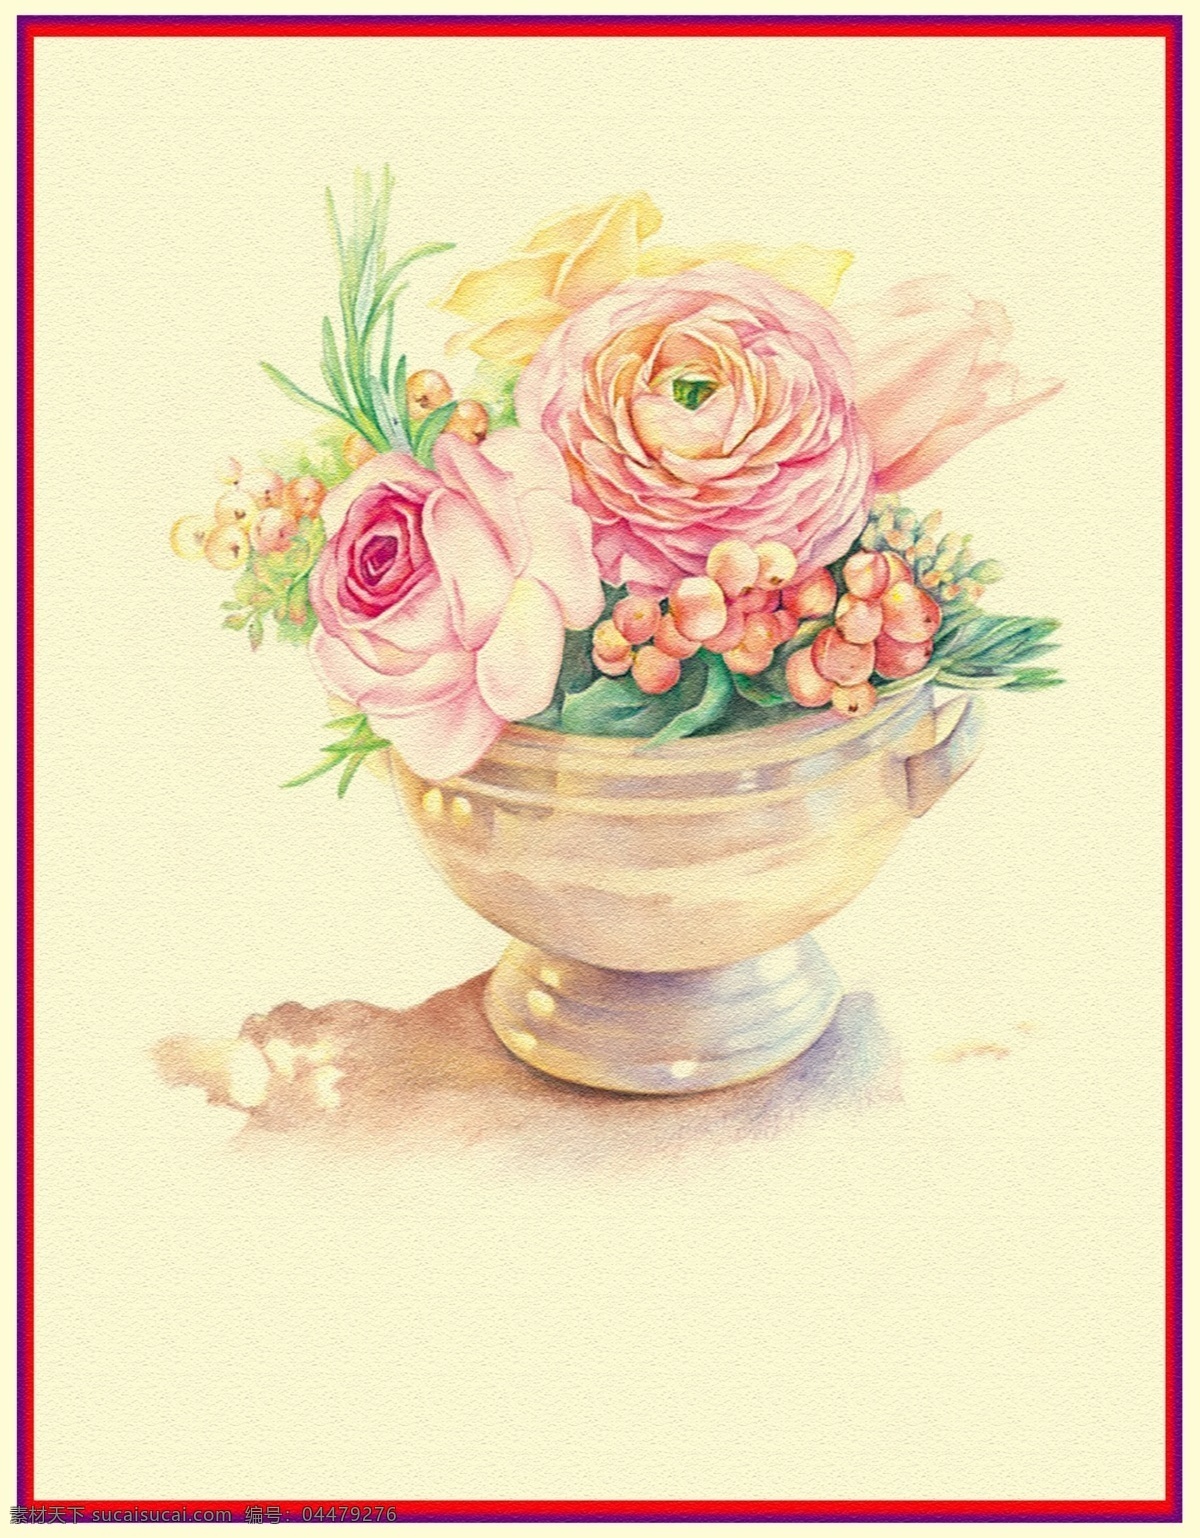 花盆图片 漂亮的水彩画 手绘水彩 手绘花朵 手绘叶子 小清新 手绘彩铅 艺术画 文化艺术 绘画书法